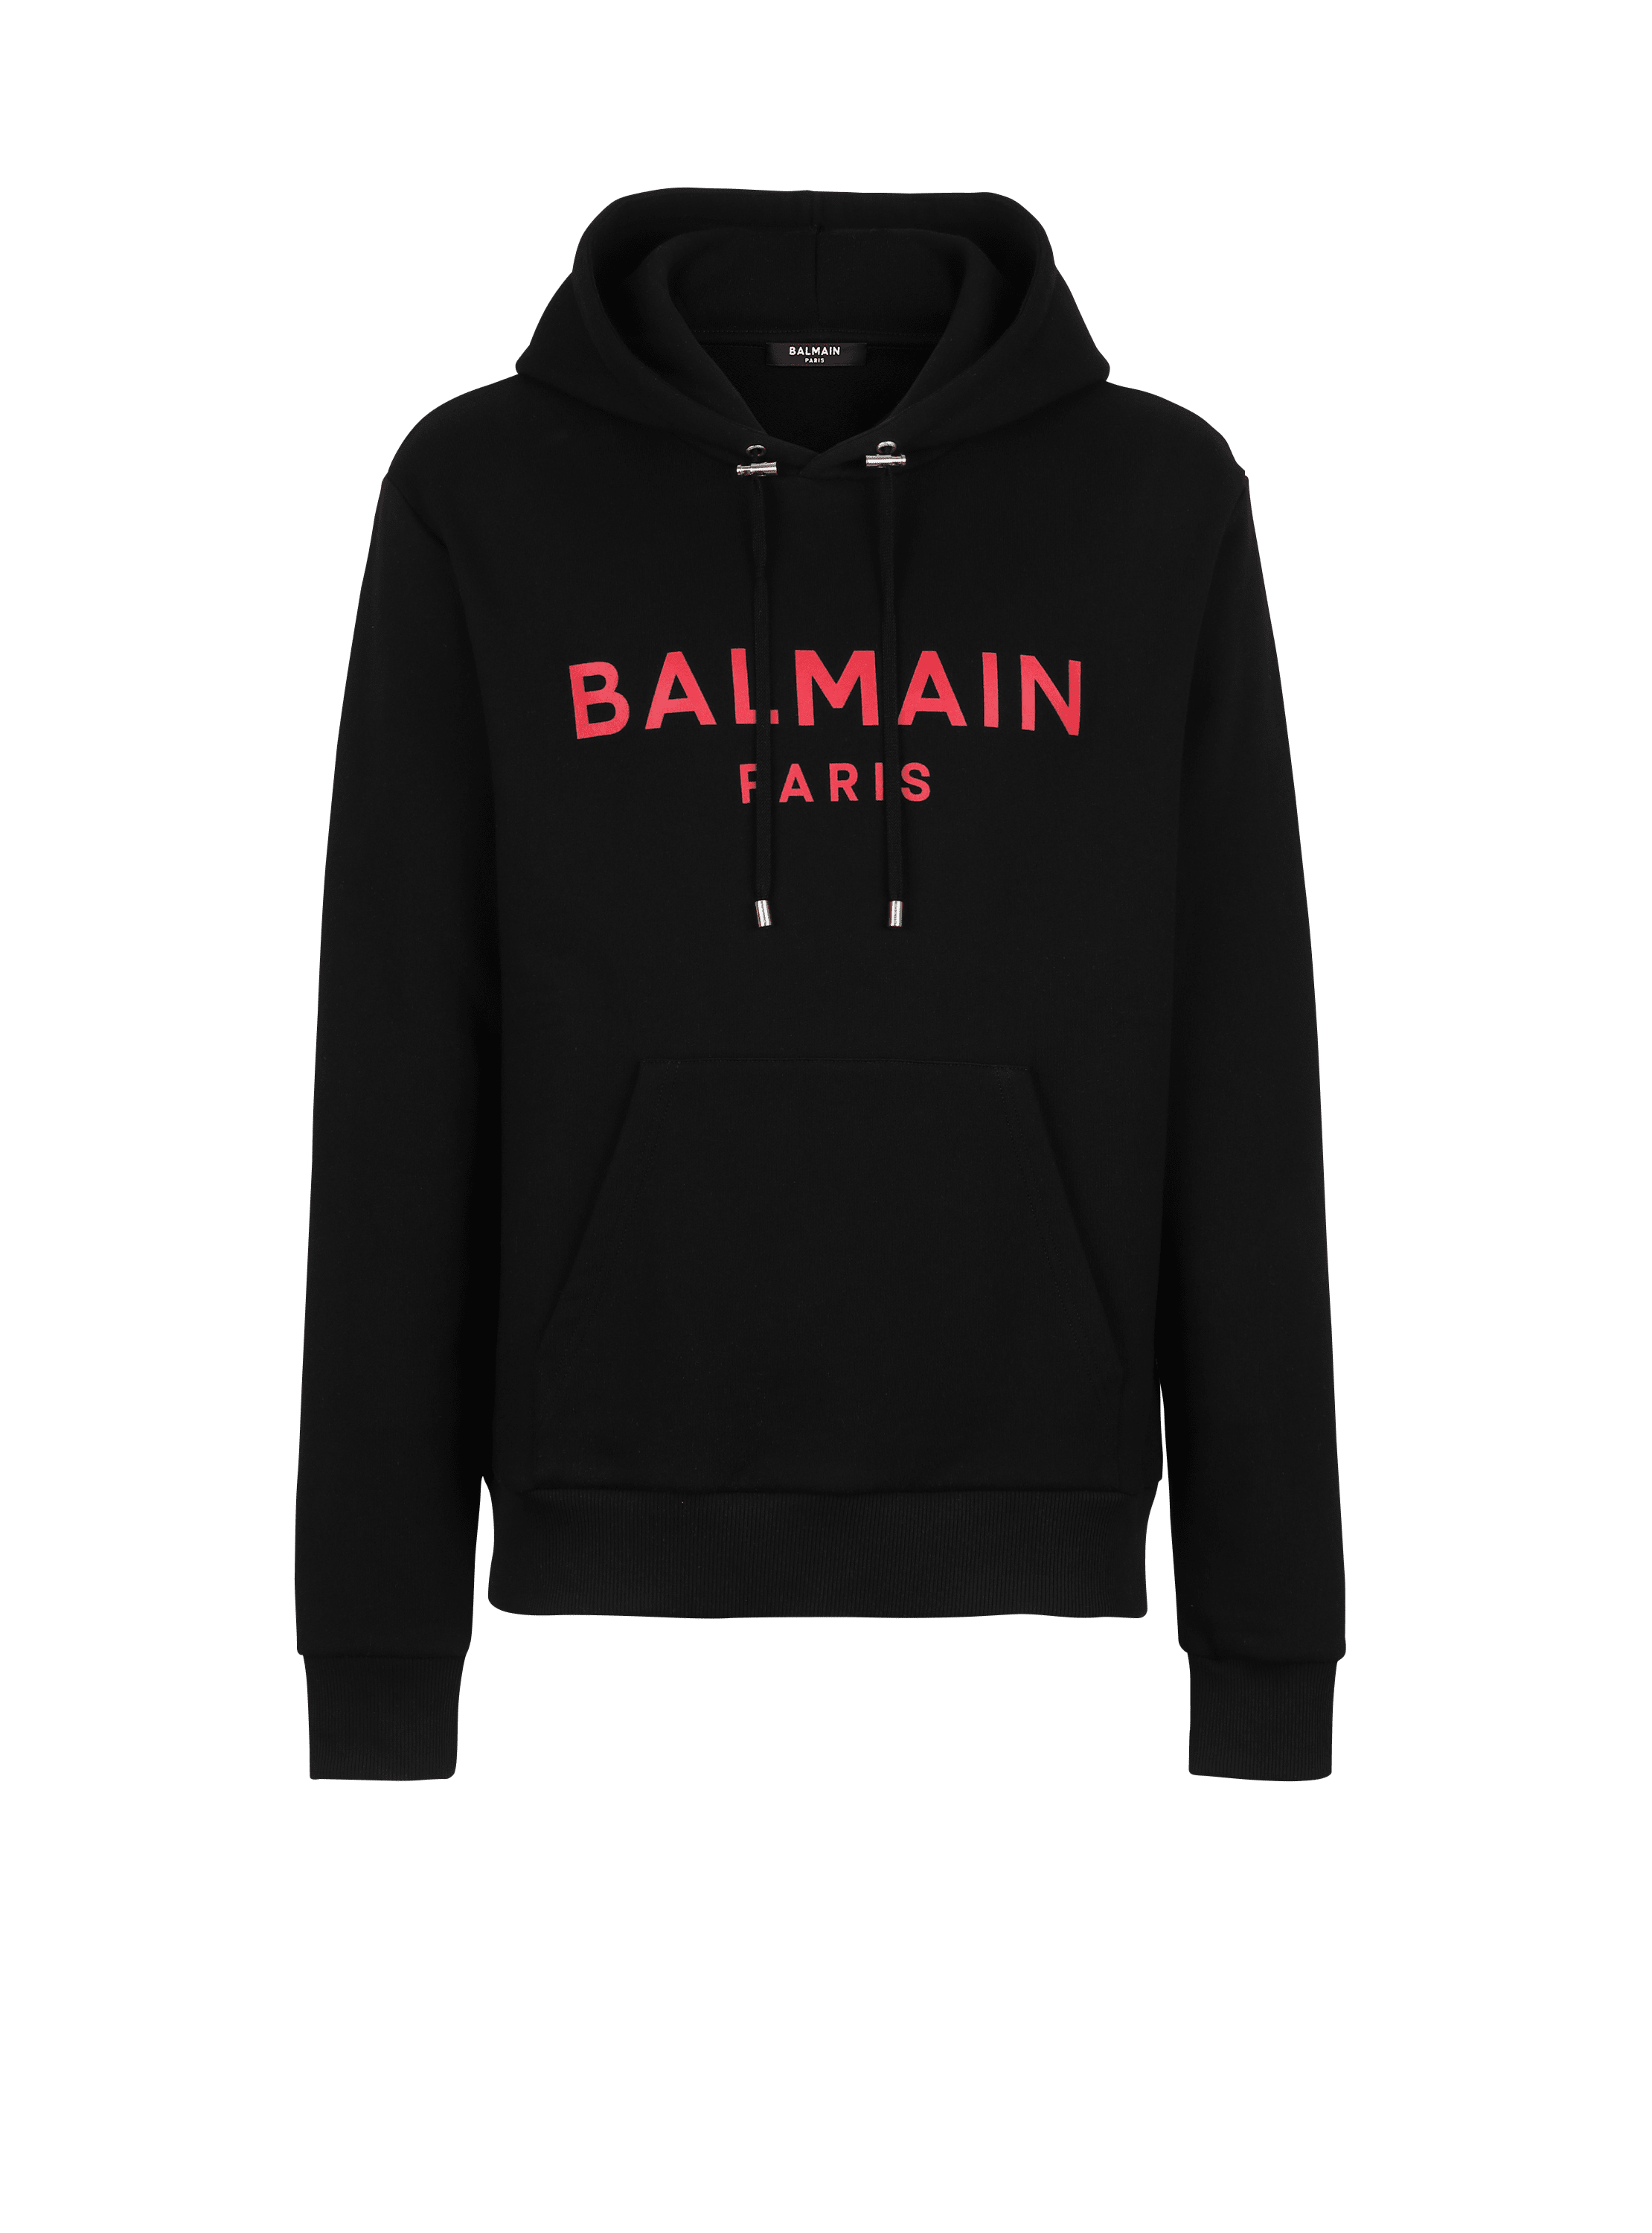 Sweat en coton imprimé logo Balmain Paris, noir, hi-res